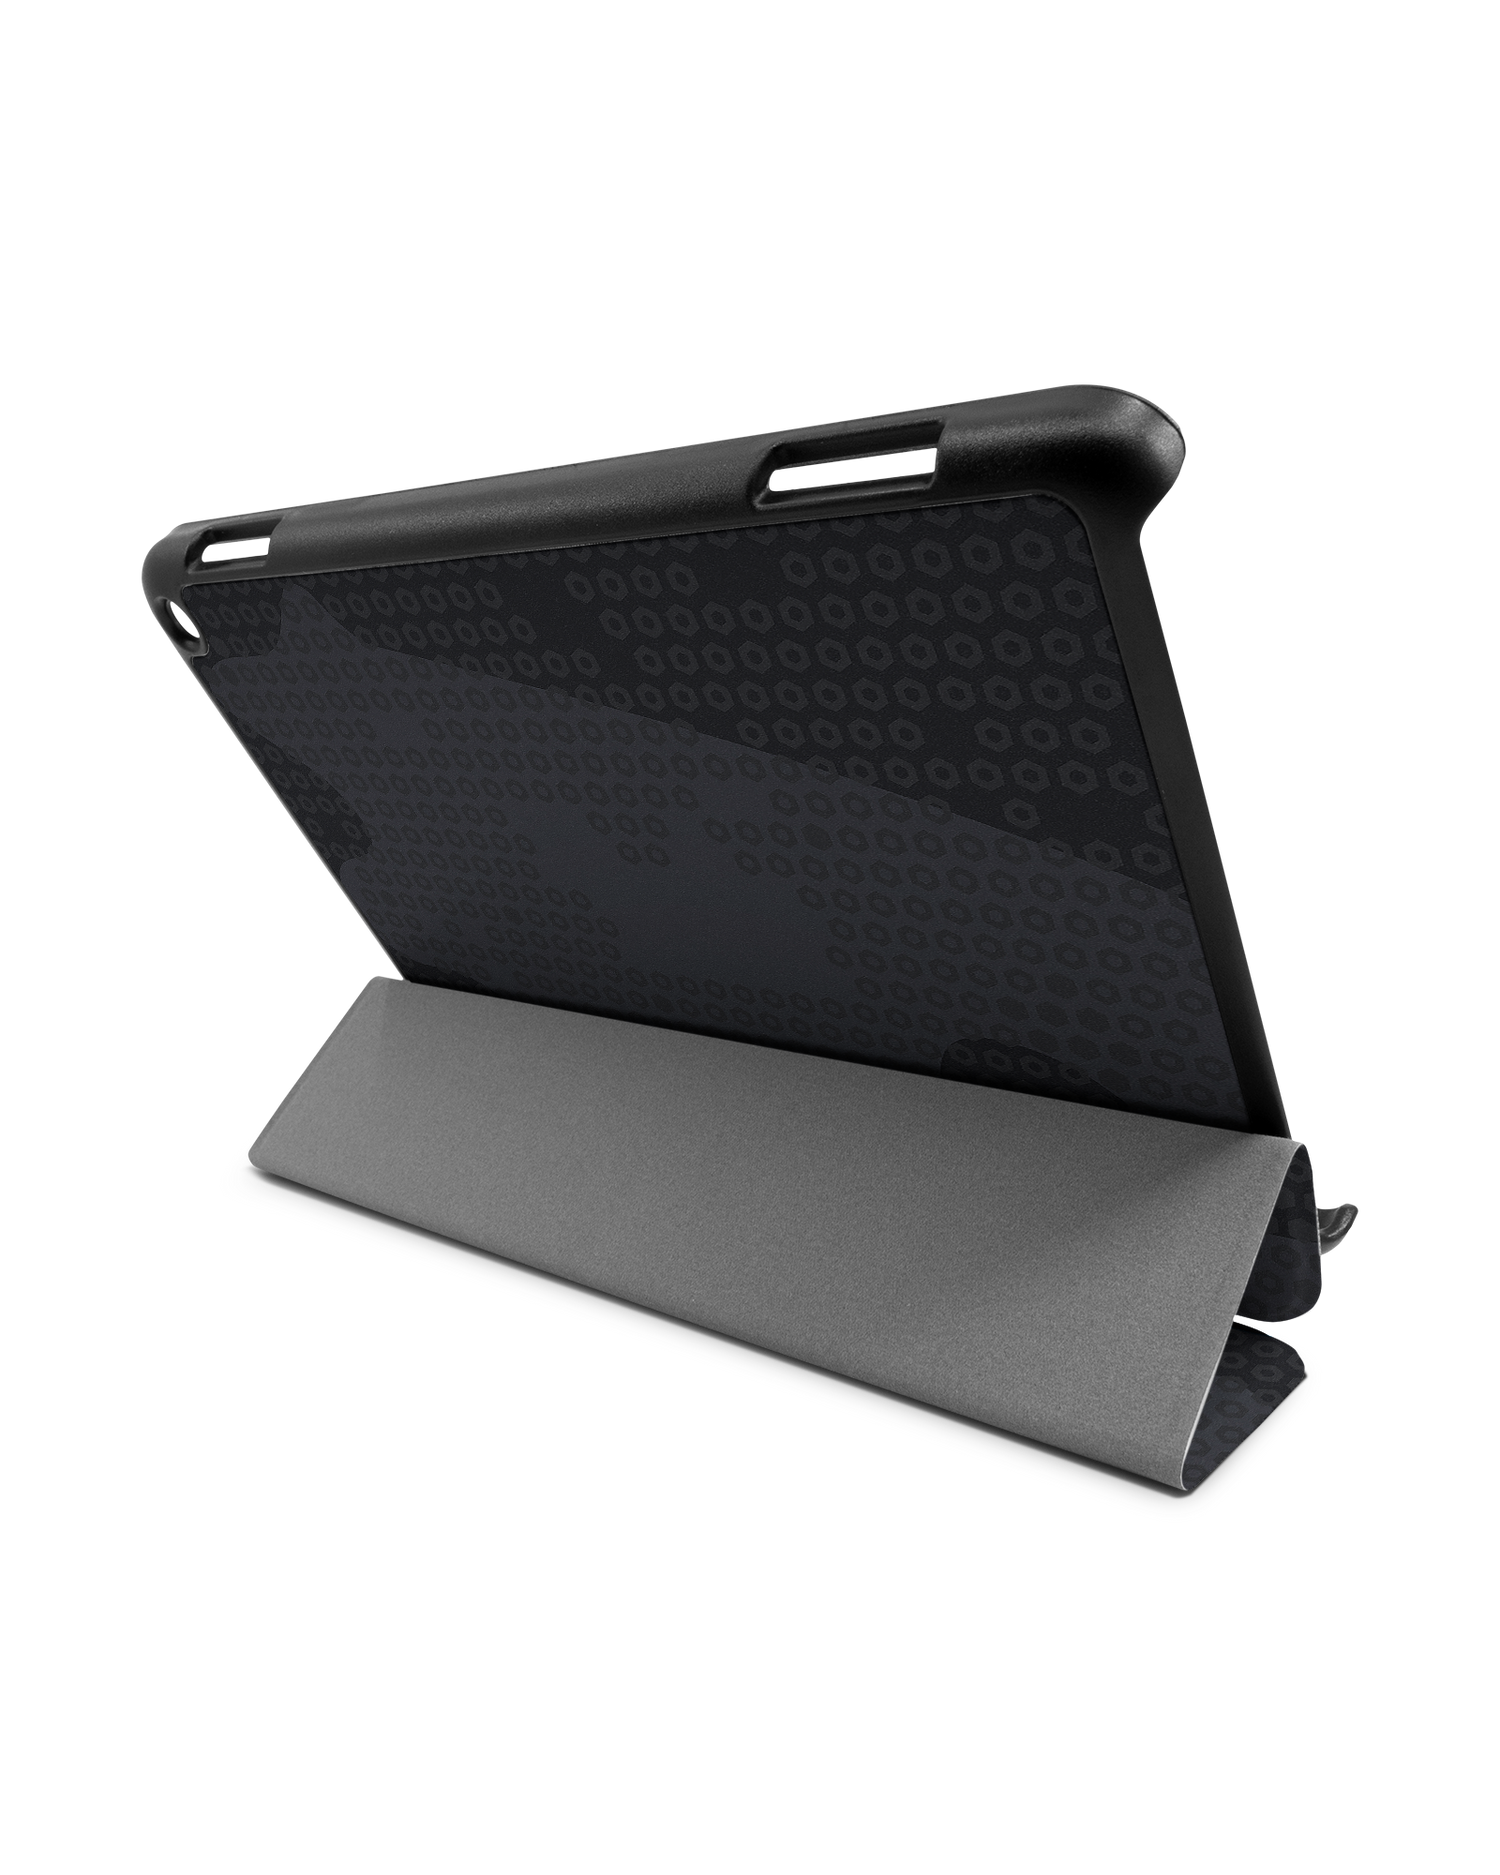 Spec Ops Dark Tablet Smart Case für Amazon Fire HD 8 (2022), Amazon Fire HD 8 Plus (2022), Amazon Fire HD 8 (2020), Amazon Fire HD 8 Plus (2020): Aufgestellt im Querformat